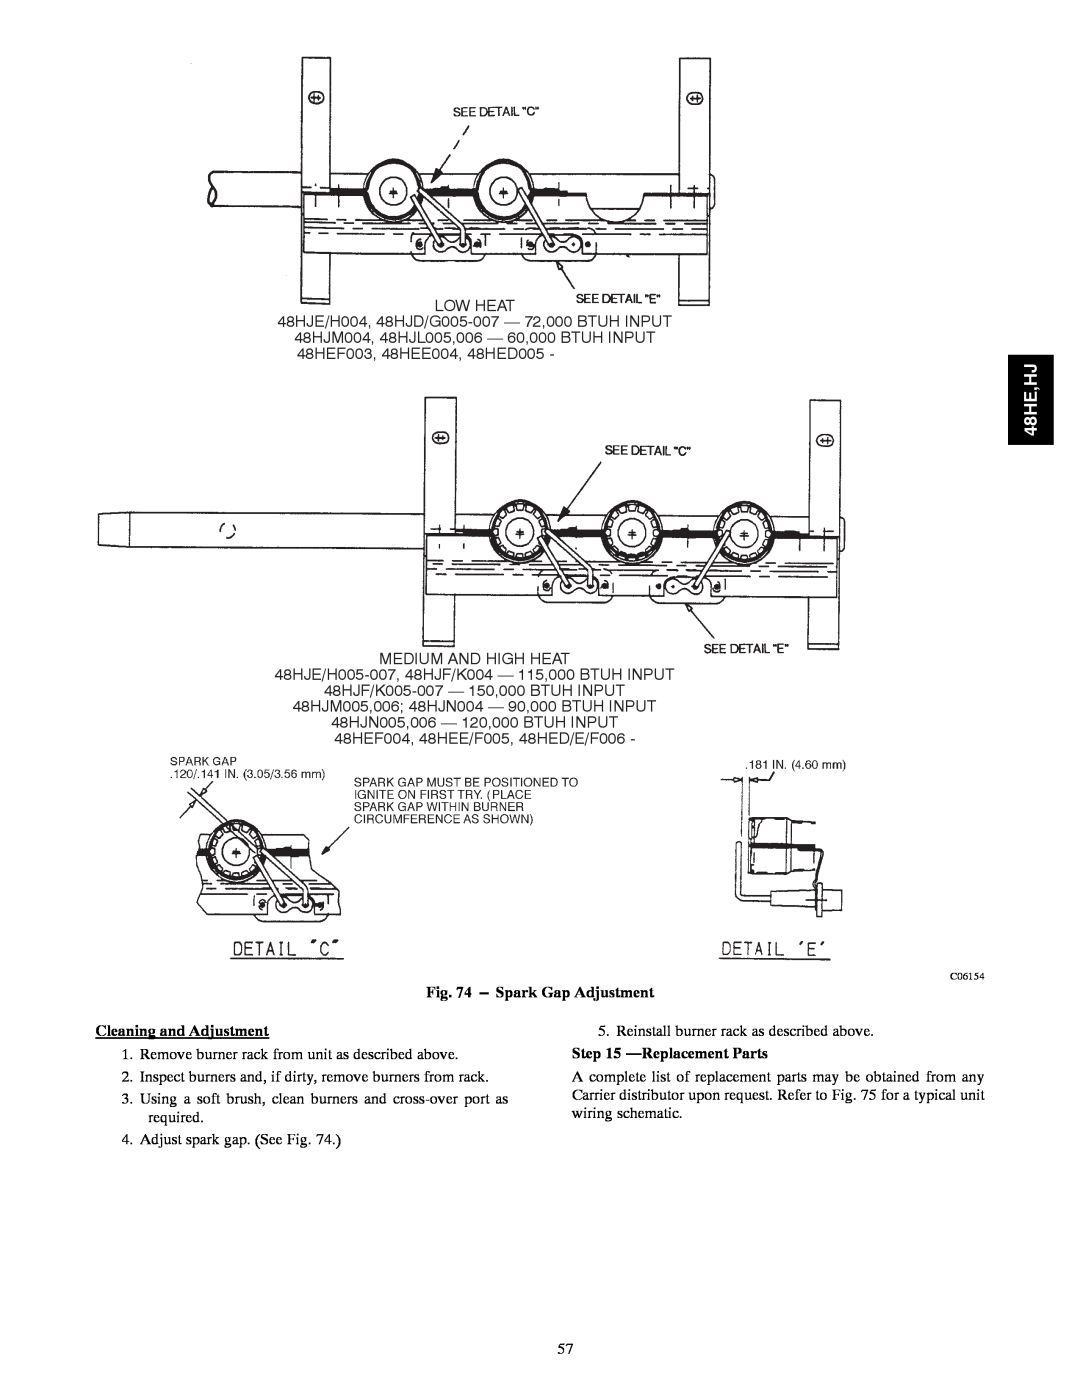 Carrier 48HJ004---007 48HE,HJ, Spark Gap Adjustment, Cleaning and Adjustment, Reinstall burner rack as described above 